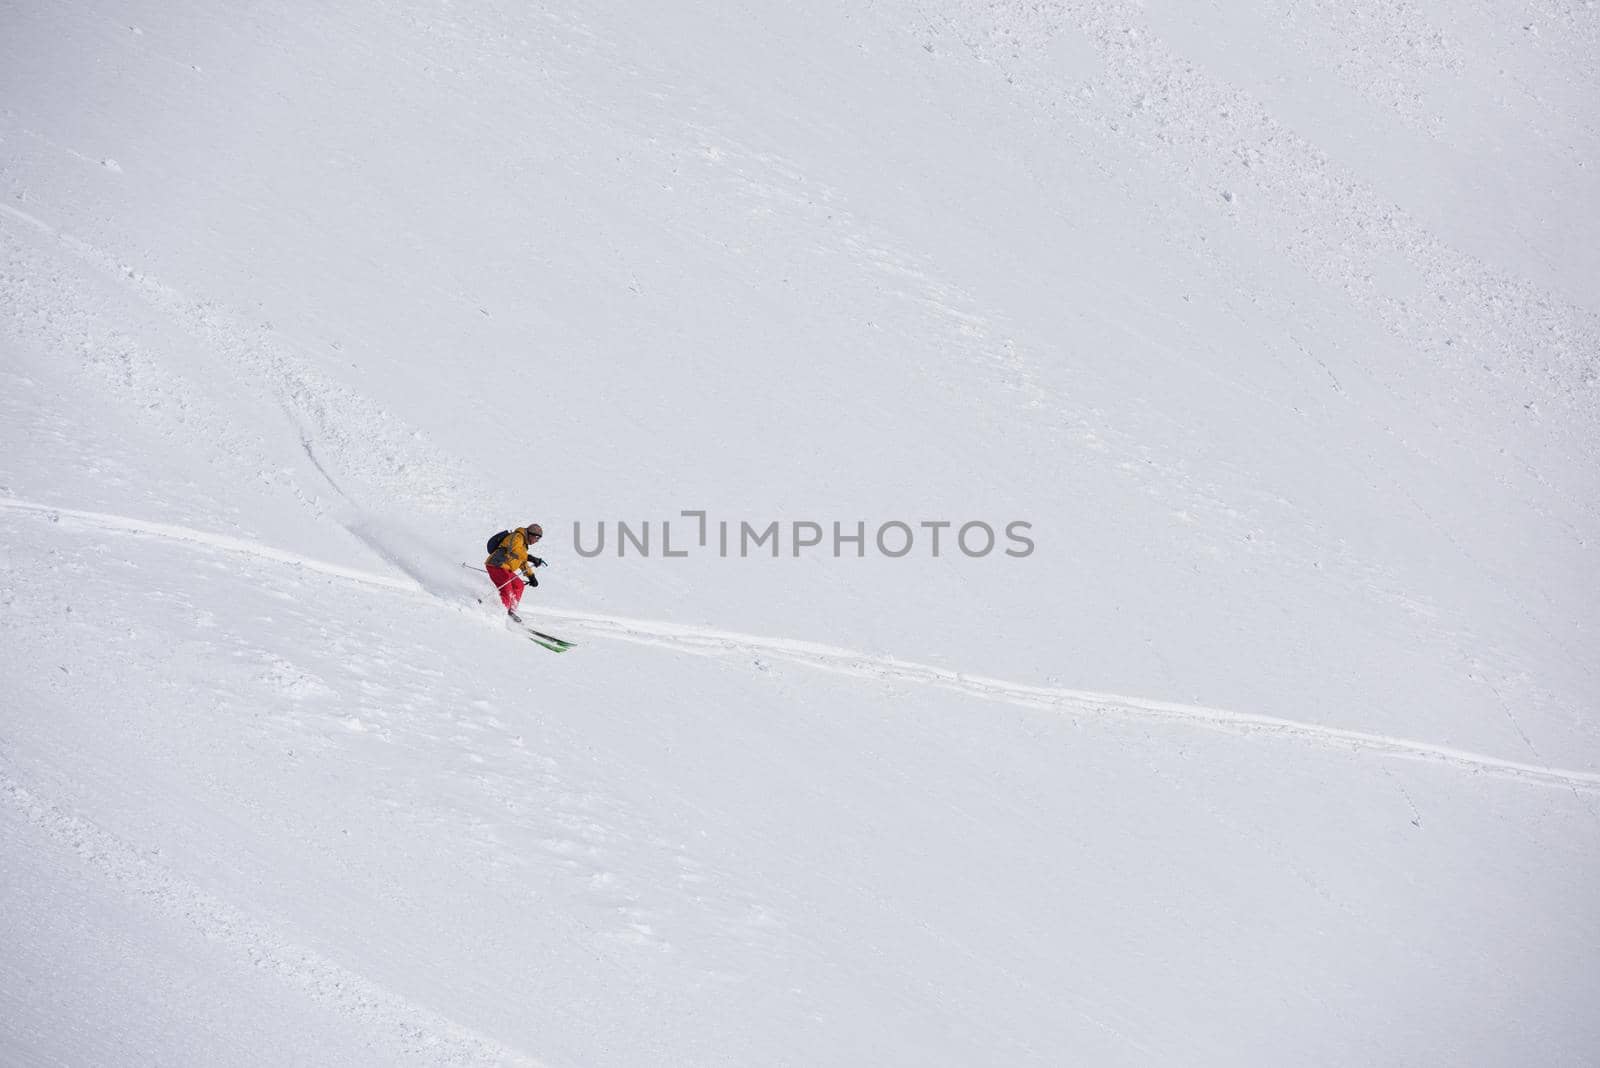 freeride skier skiing in deep powder snow by dotshock